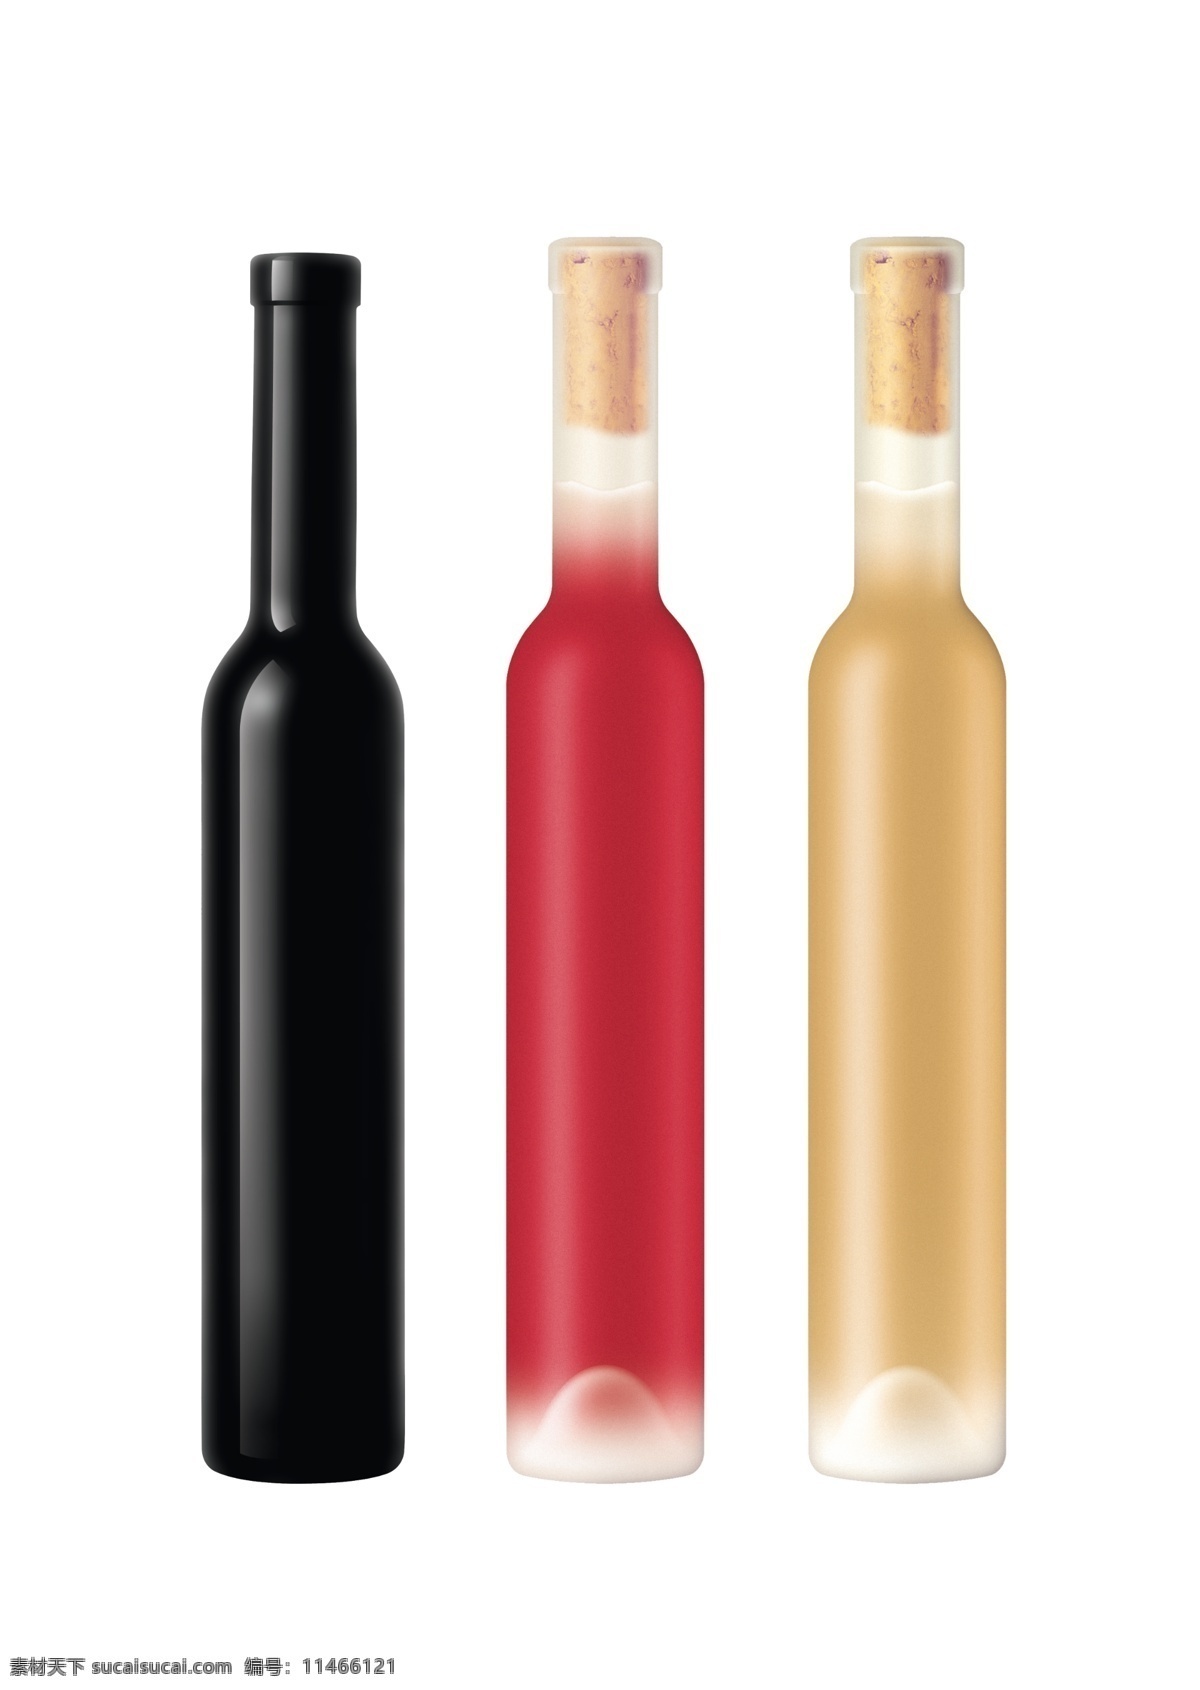 红酒 瓶 冰 酒 模板 冰酒 葡萄酒 盒 包装设计 分层 源文件